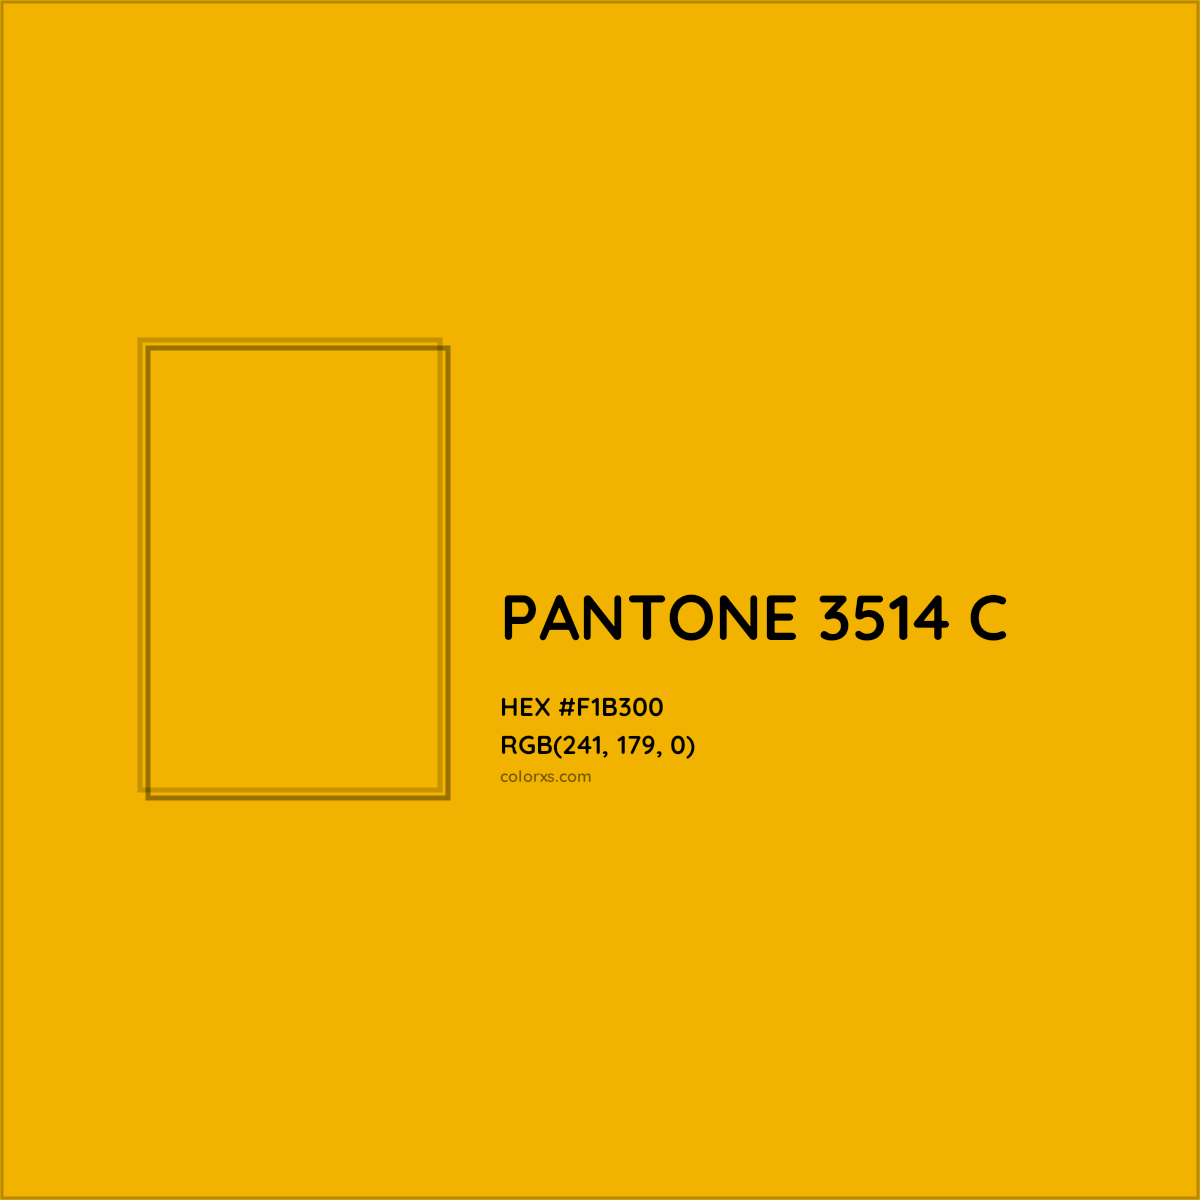 HEX #F1B300 PANTONE 3514 C CMS Pantone PMS - Color Code